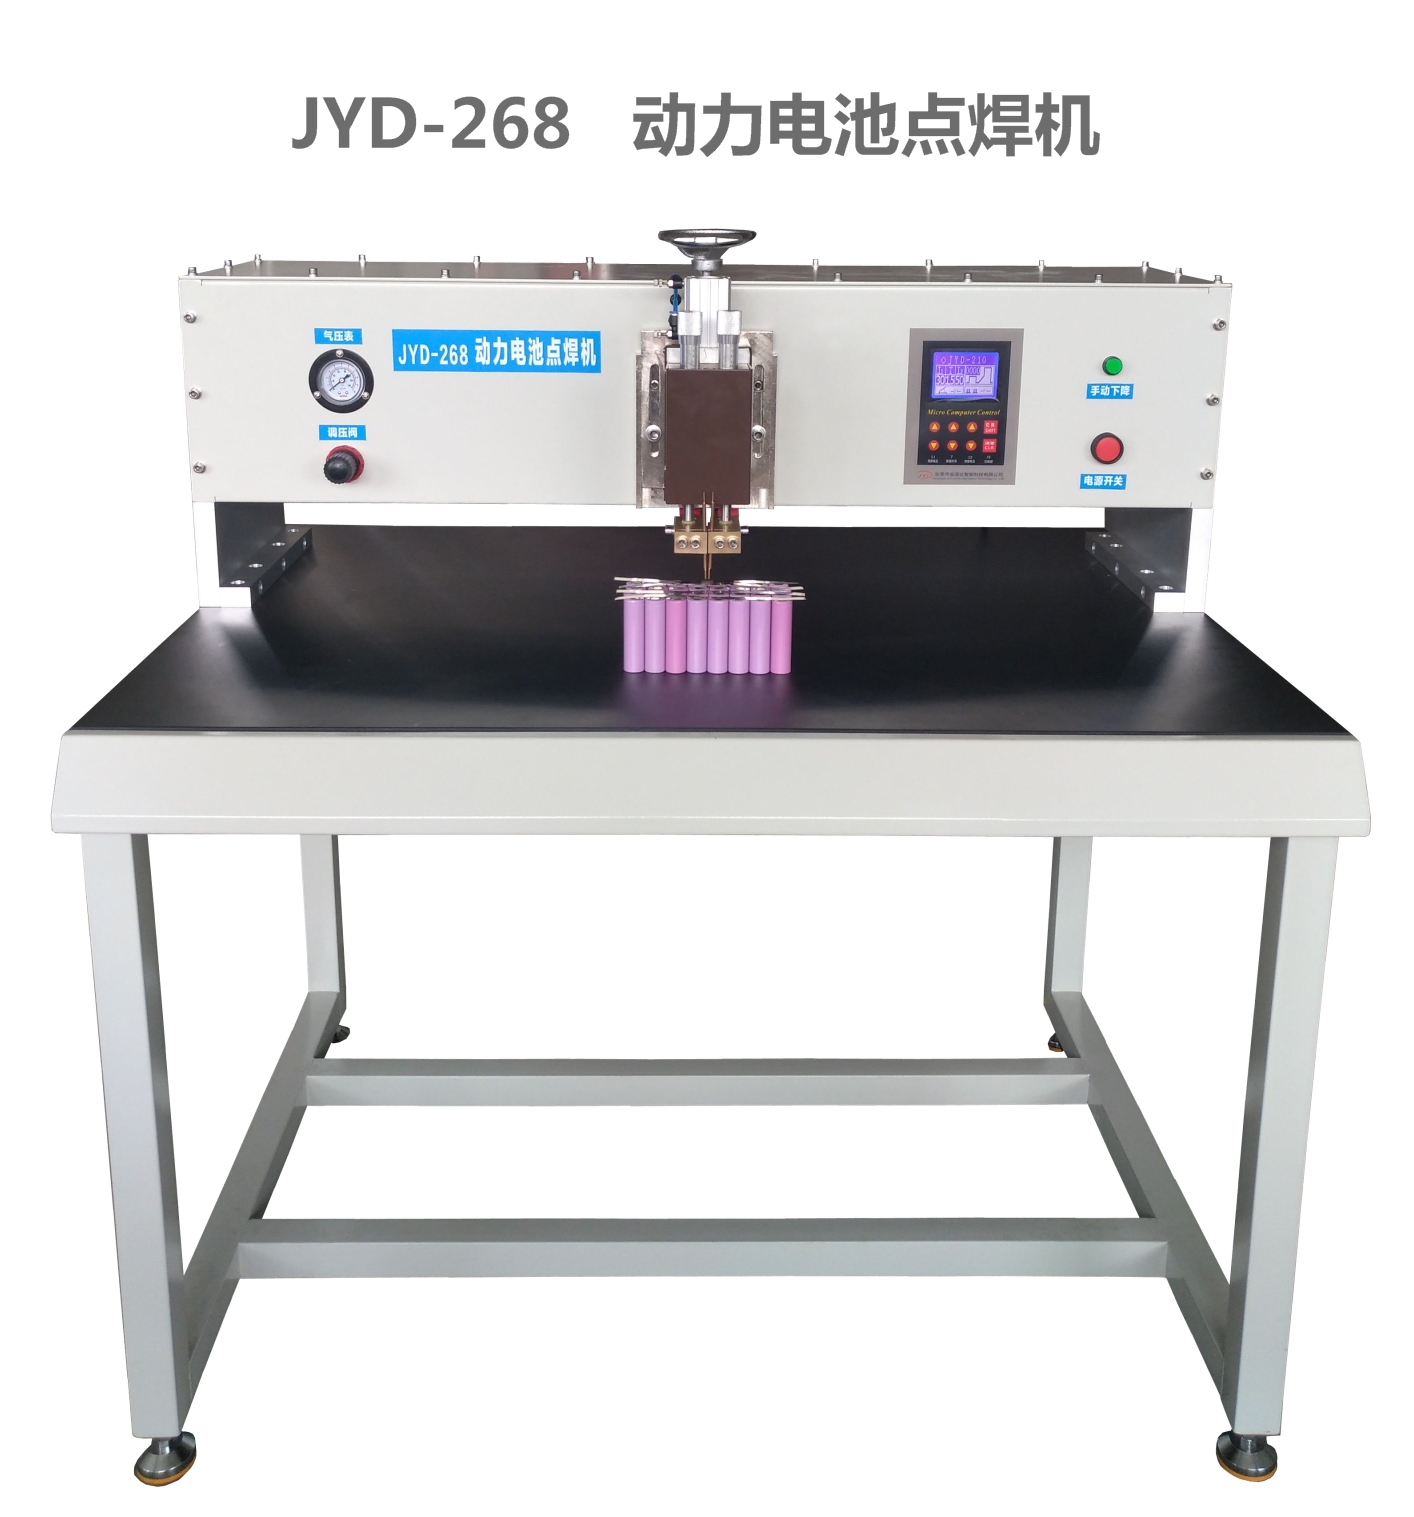 厂家直销 JYD-268  动力电池点焊机